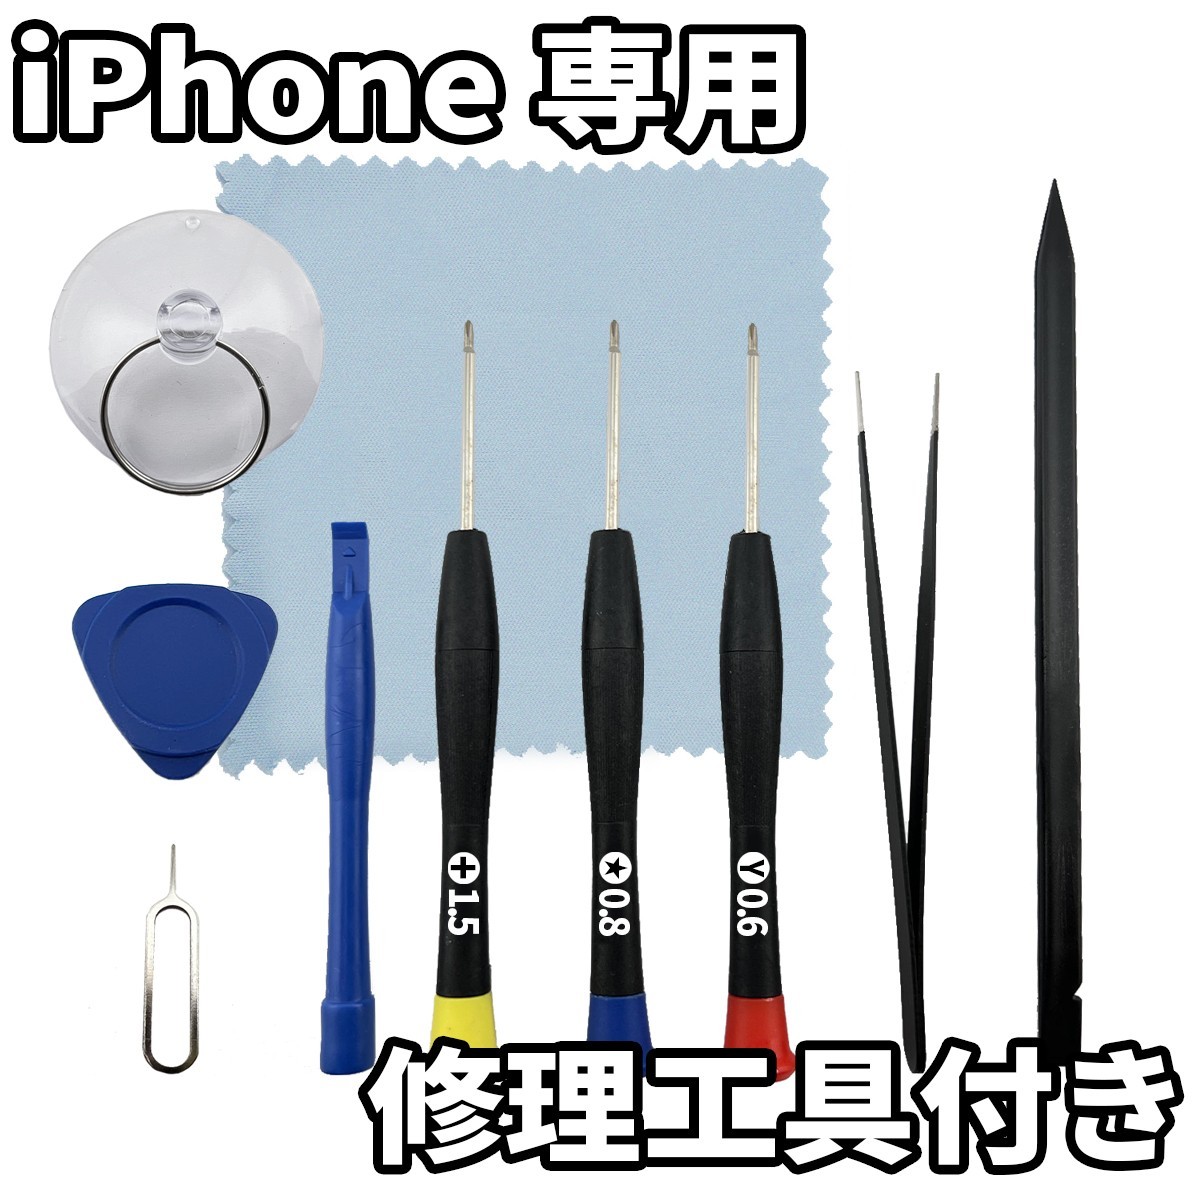 iPhone5s 高品質液晶 フロントパネル 白 高品質AAA 互換品 LCD 業者 画面割れ 液晶 iphone 修理 ガラス割れ 交換 タッチ_画像3